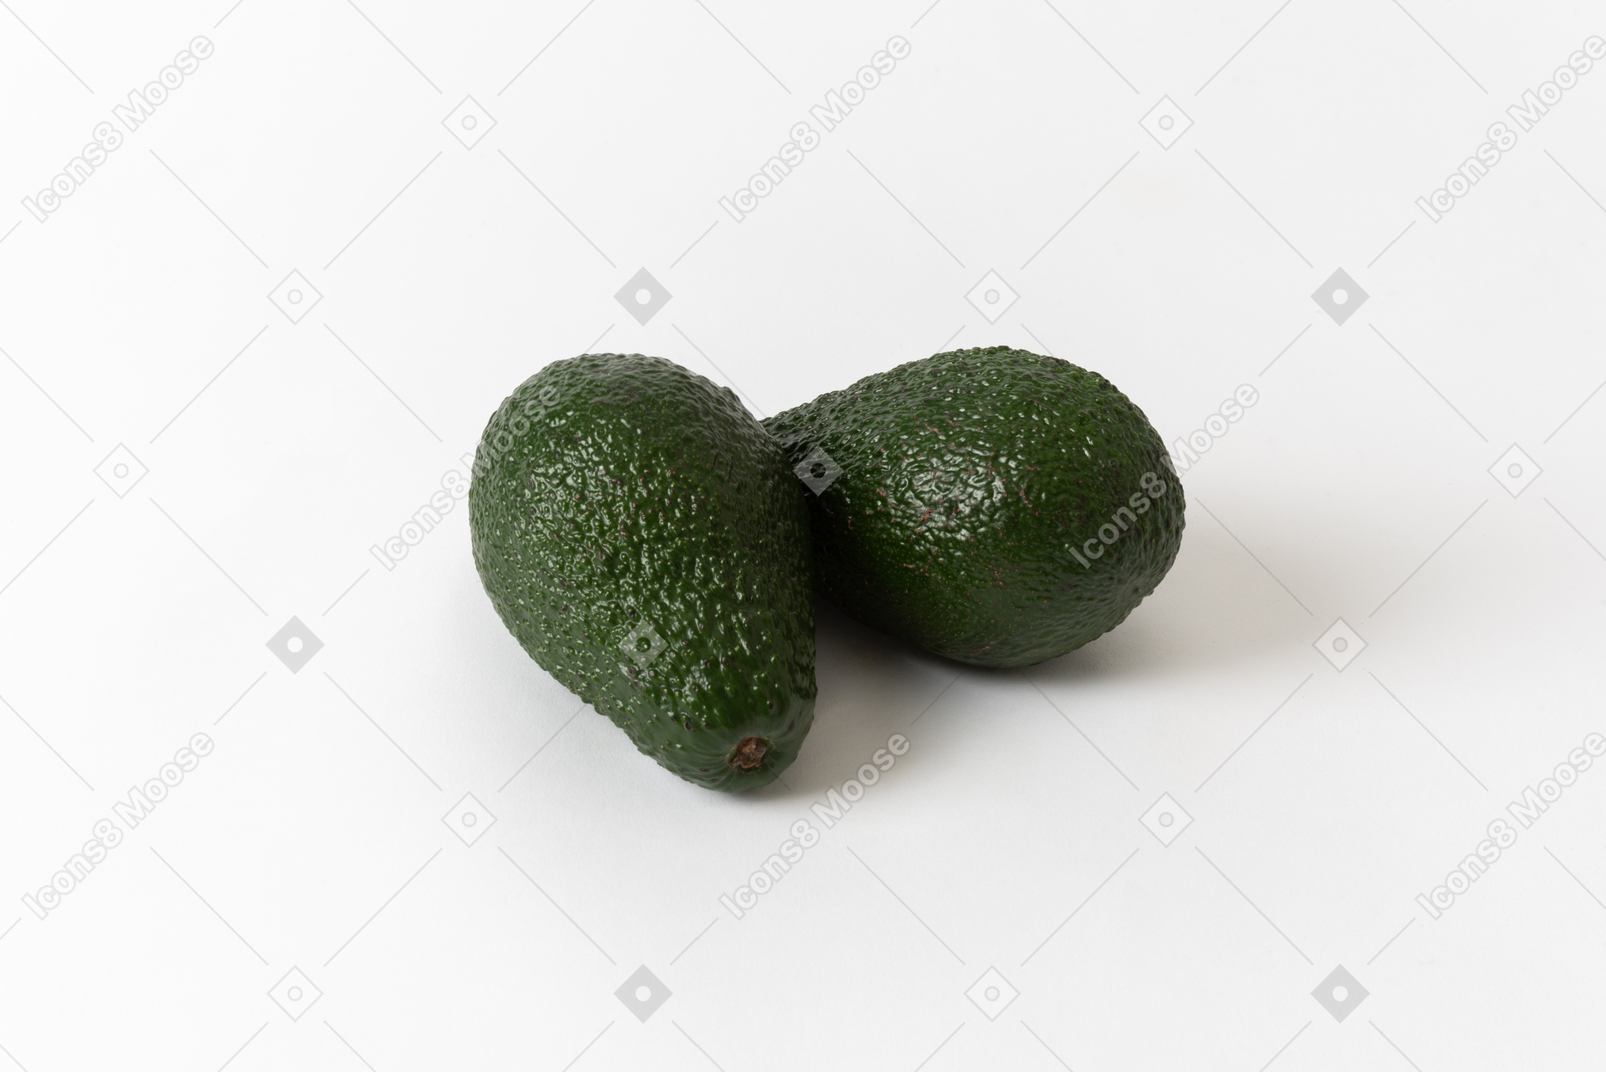 L'avocado è piuttosto un ortaggio da gustare